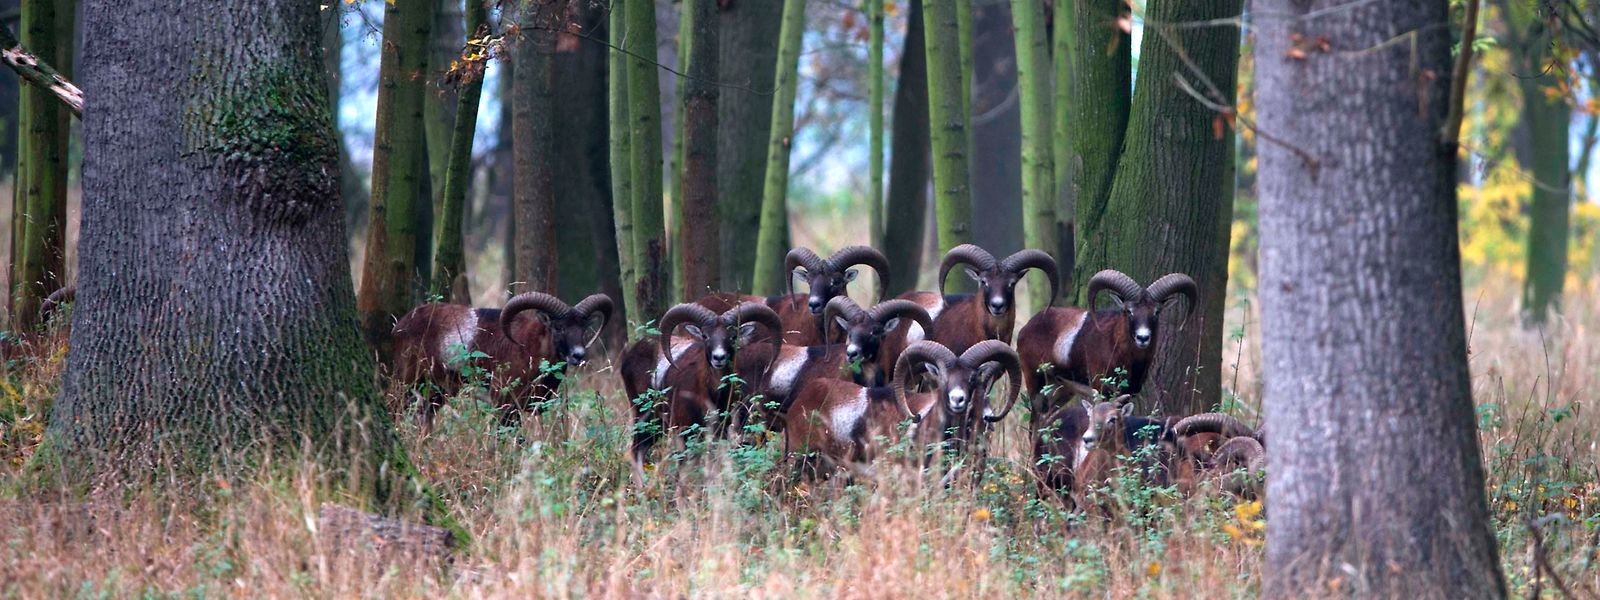 Nach wie vor leben etwa 200 Mufflons im Echternacher Wald. Durch erhöhten Jagddruck halten sich die Schäden jetzt in Grenzen.